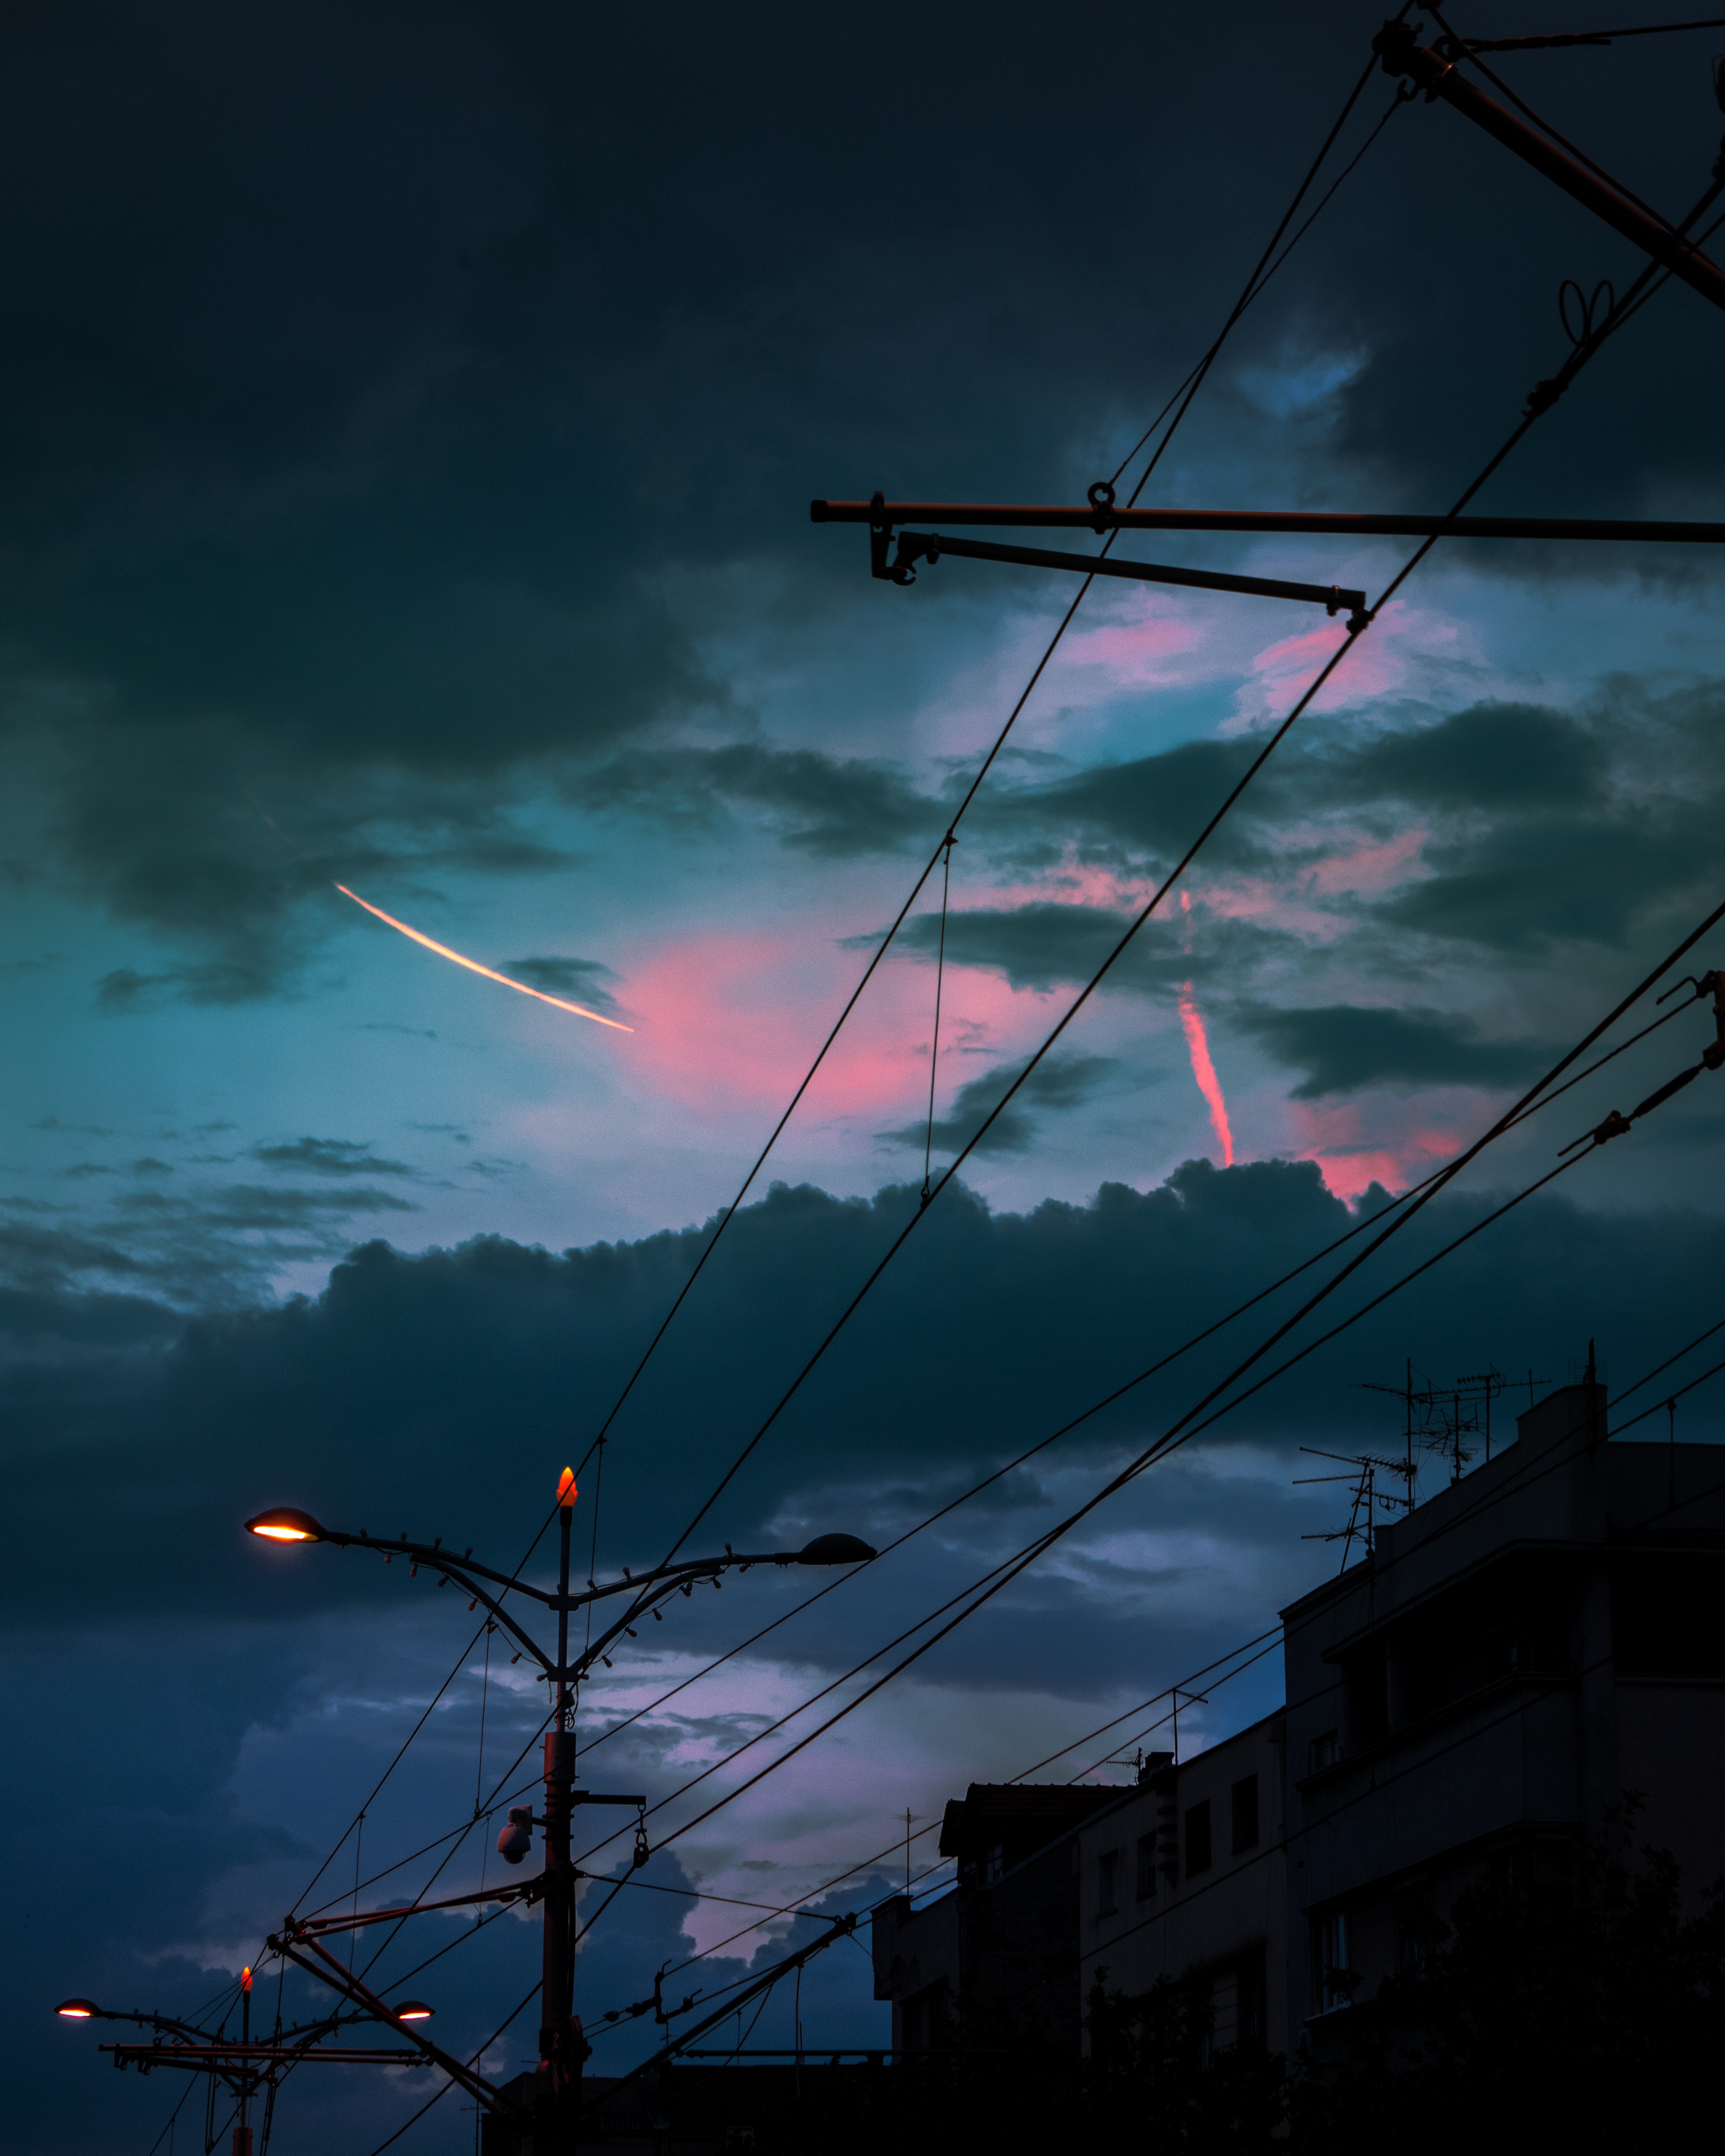 twilight, dark, city, lights, lanterns, dusk, pillars, posts, wires, wire